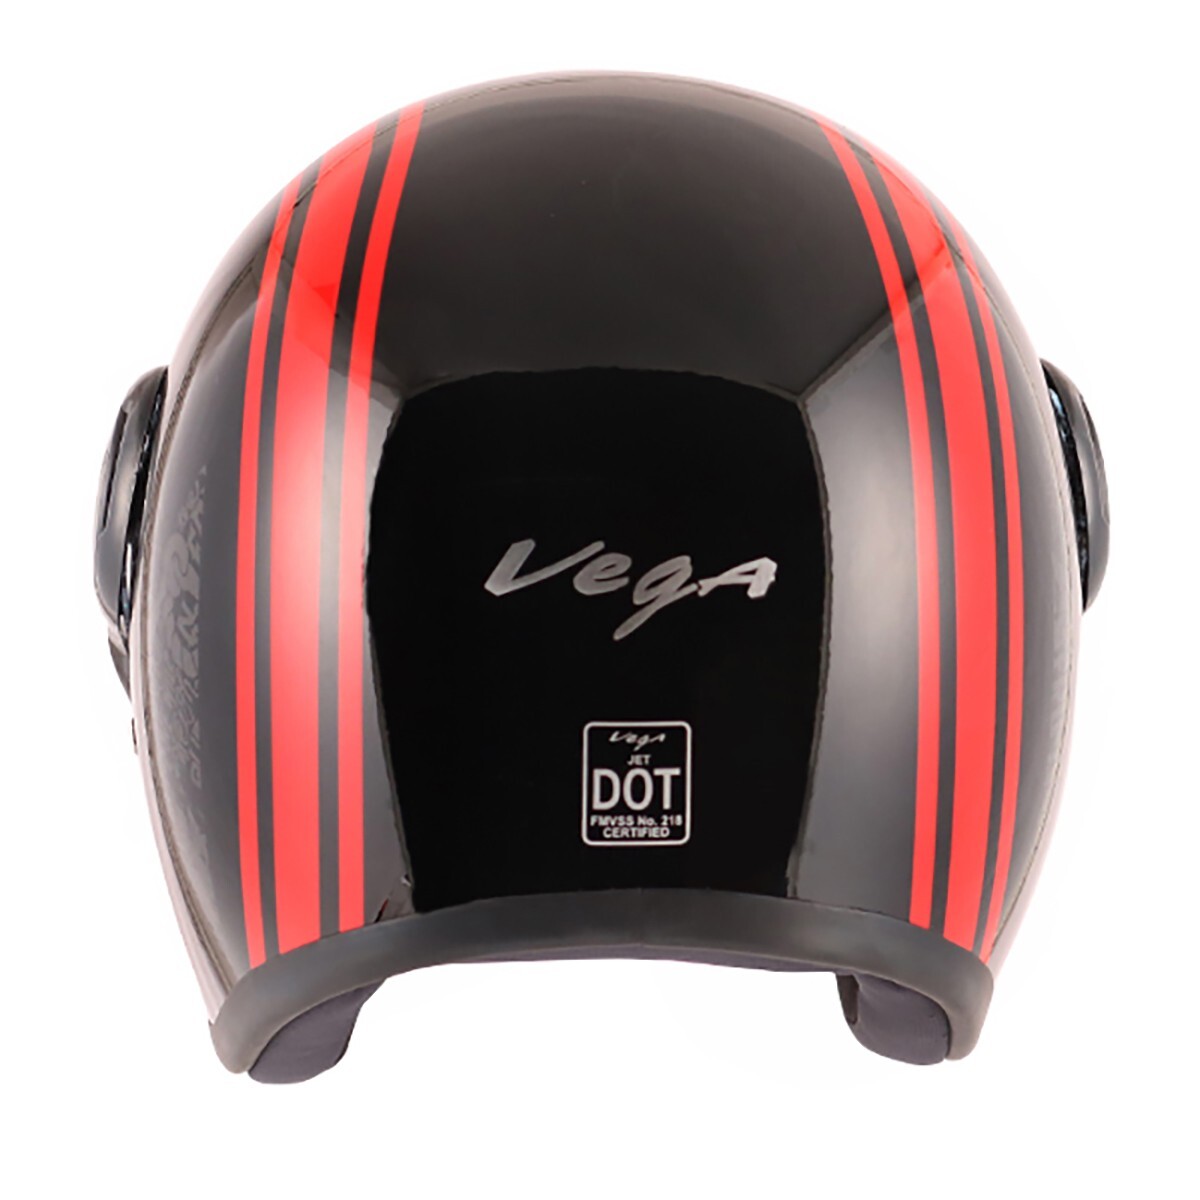 Vega Jet GR W/Visor Rid-Helmet-L